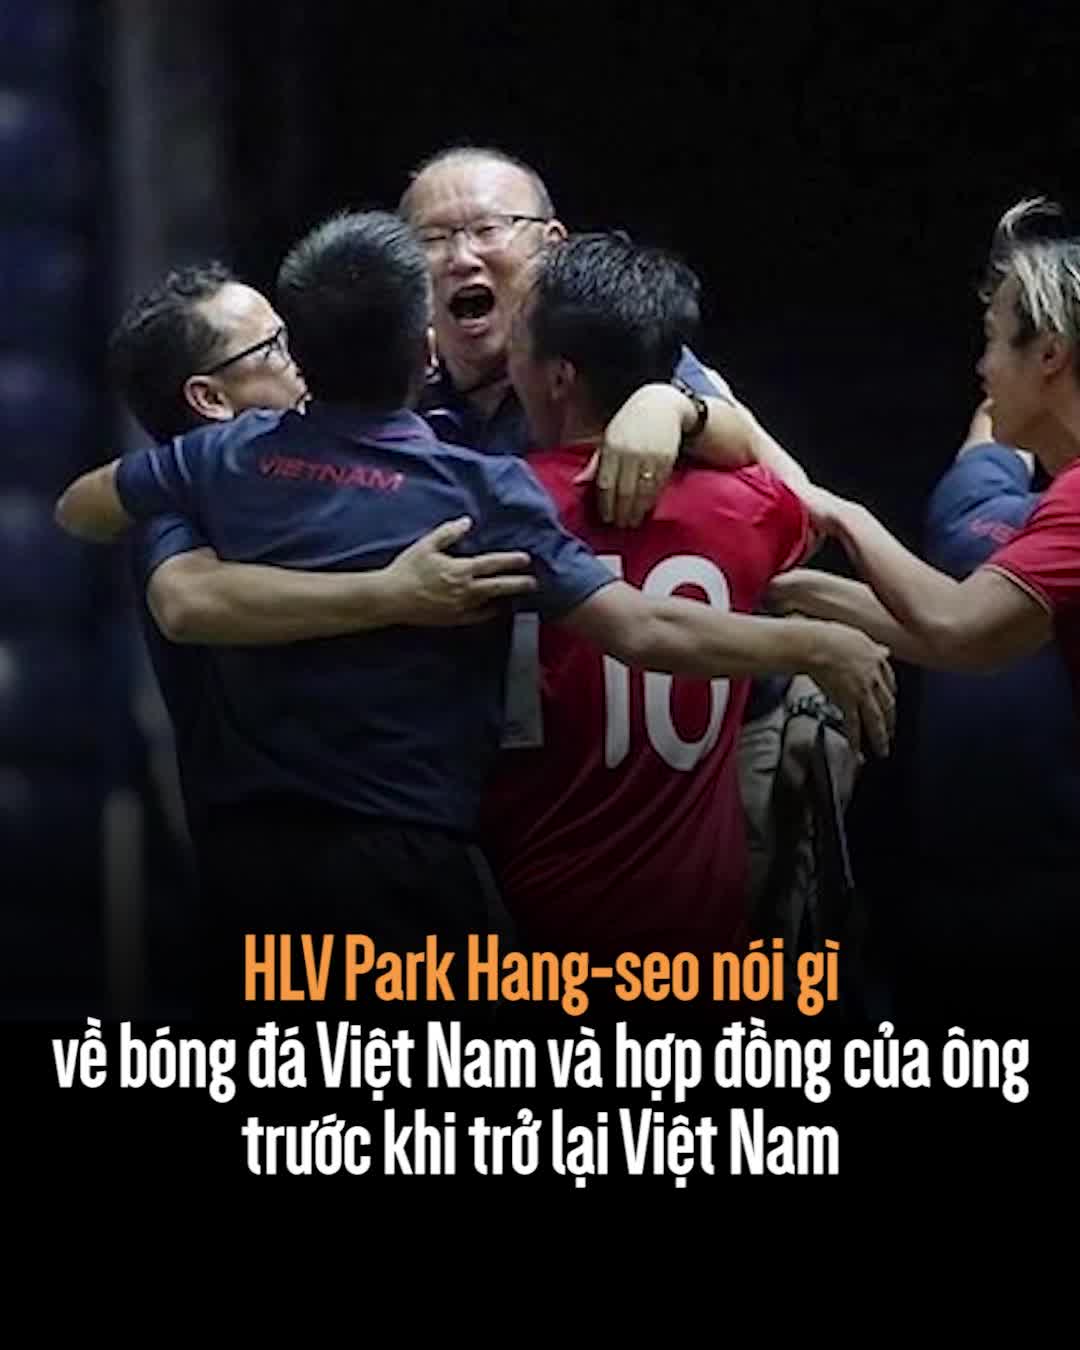 thumbnail - HLV Park Hang-seo nói gì về bóng đá Việt Nam và hợp đồng của ông trước khi trở lại Việt Nam